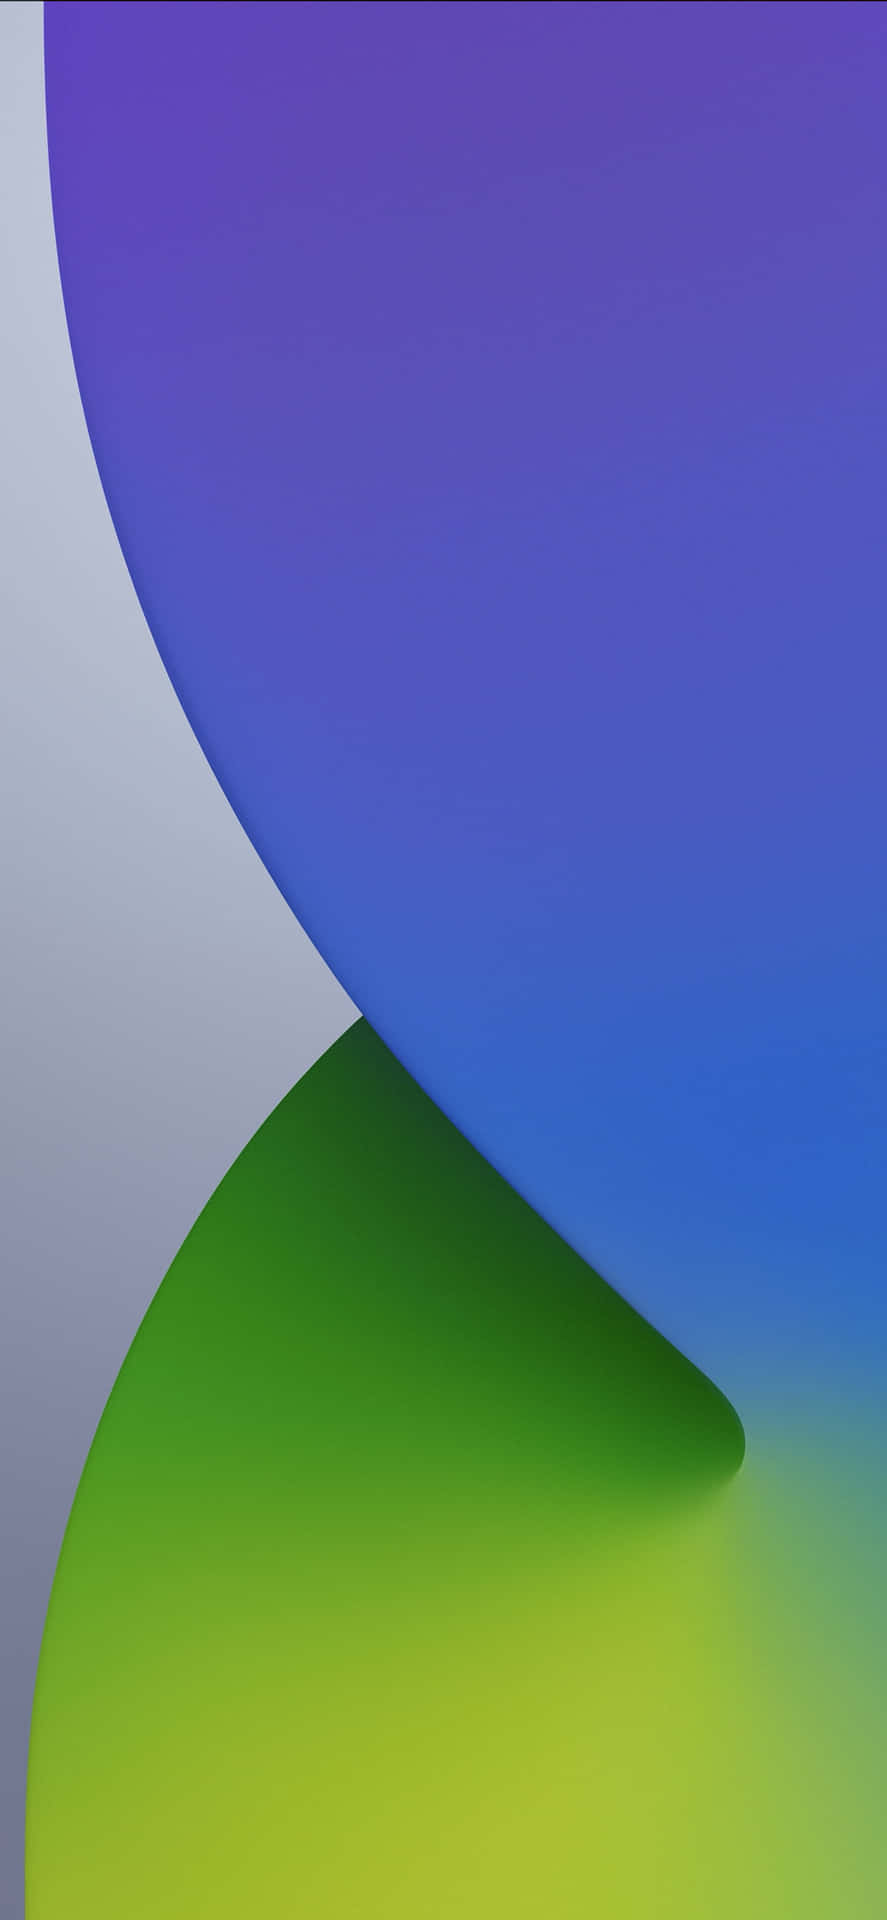 Einfarbenfroher Und Grüner Hintergrund Mit Einem Blau-grünen Farbverlauf